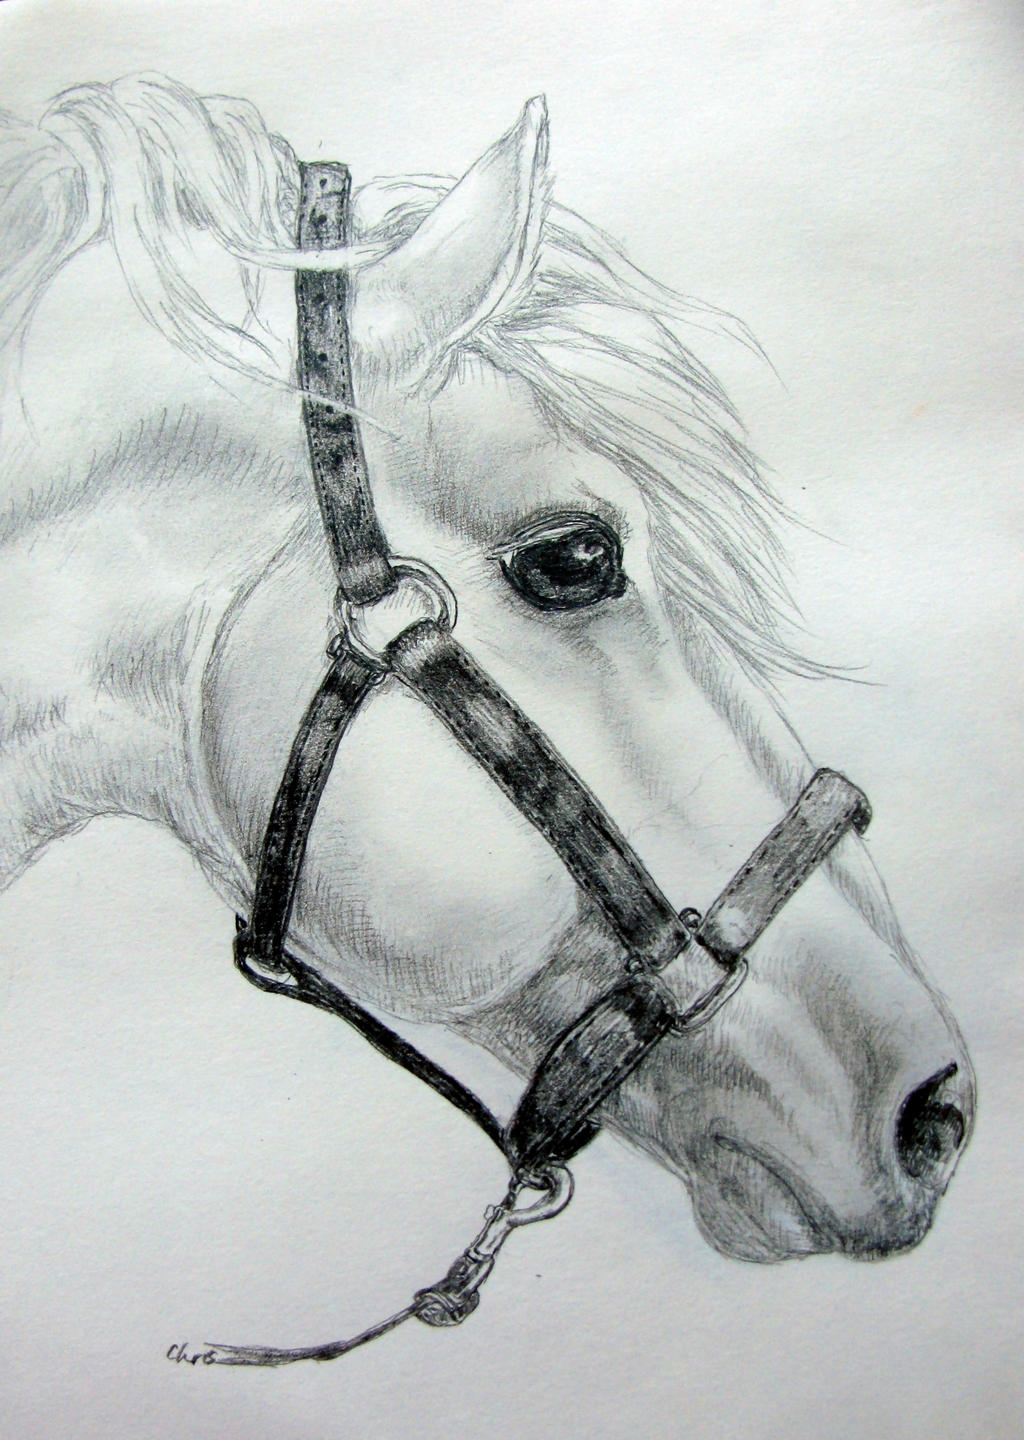 White horse by chrisravensar on DeviantArt